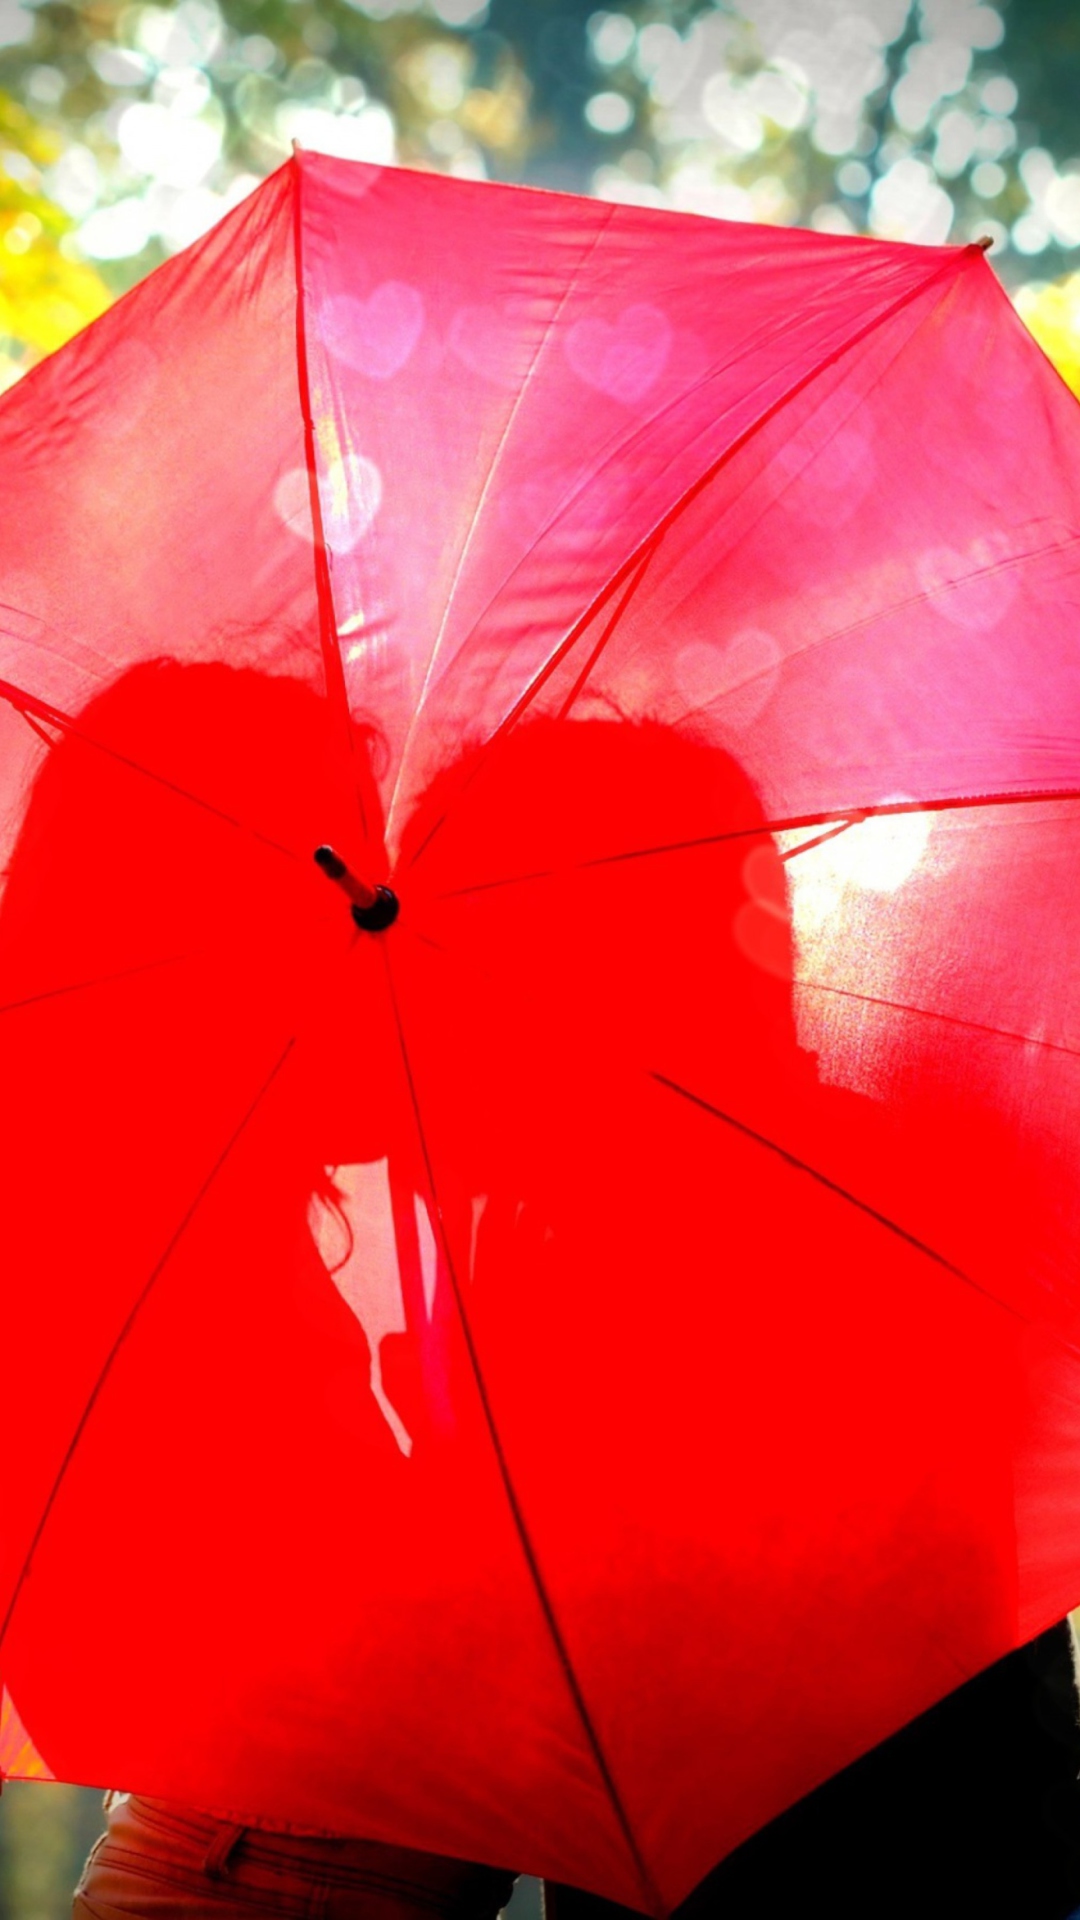 Обои Couple Behind Red Umbrella 1080x1920